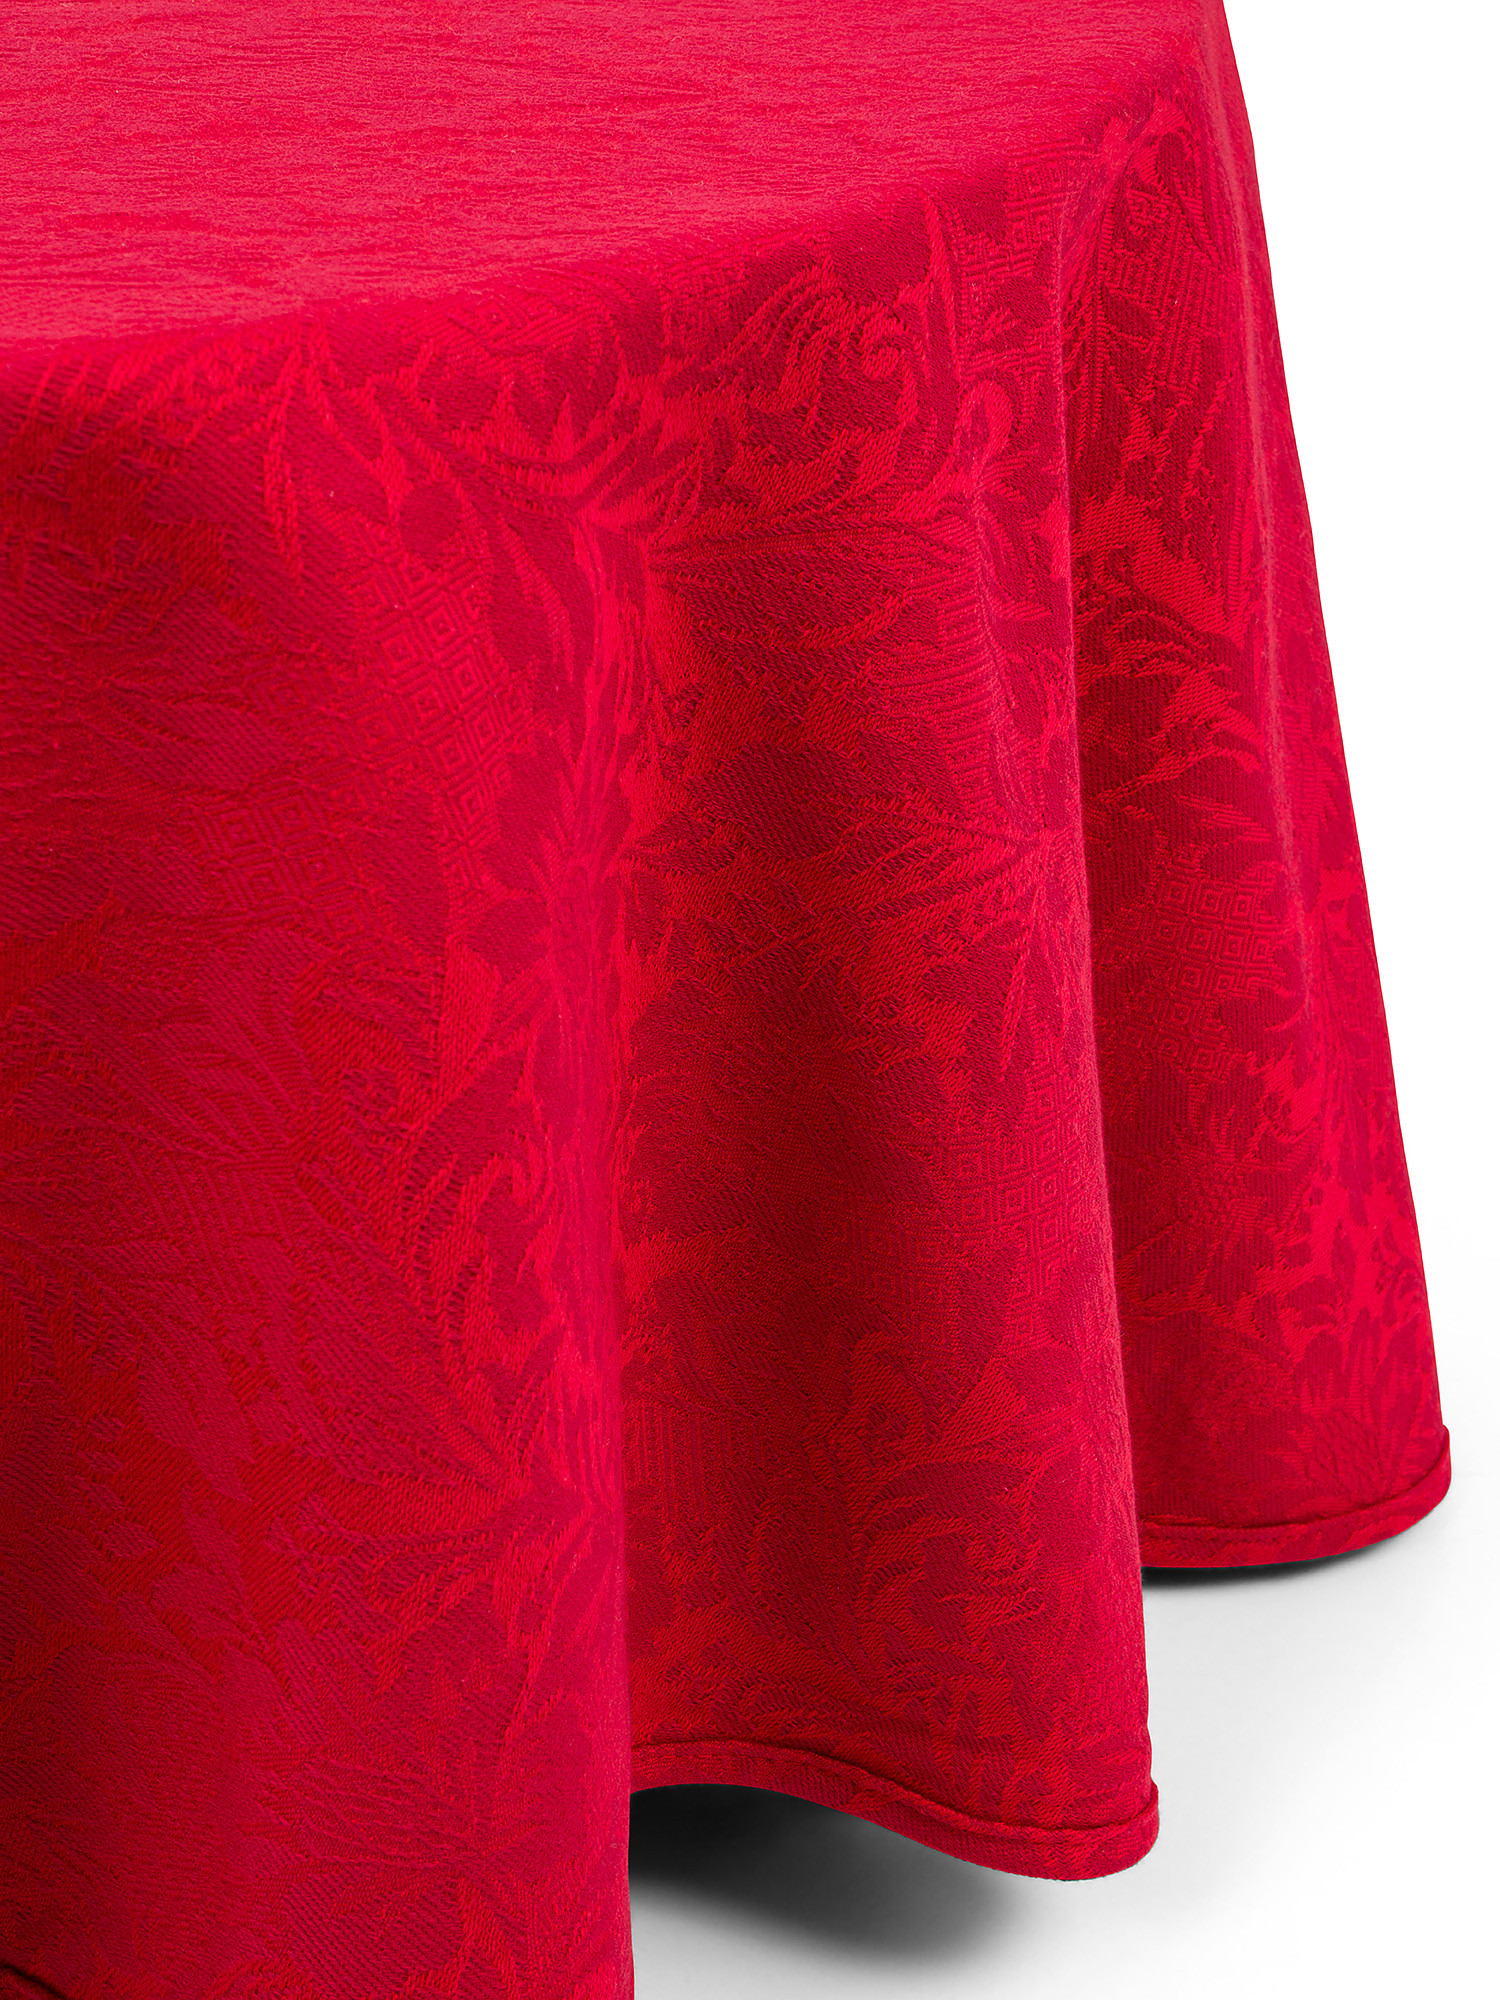 Tovaglia rotonda cotone a trama jacquard, Rosso, large image number 1